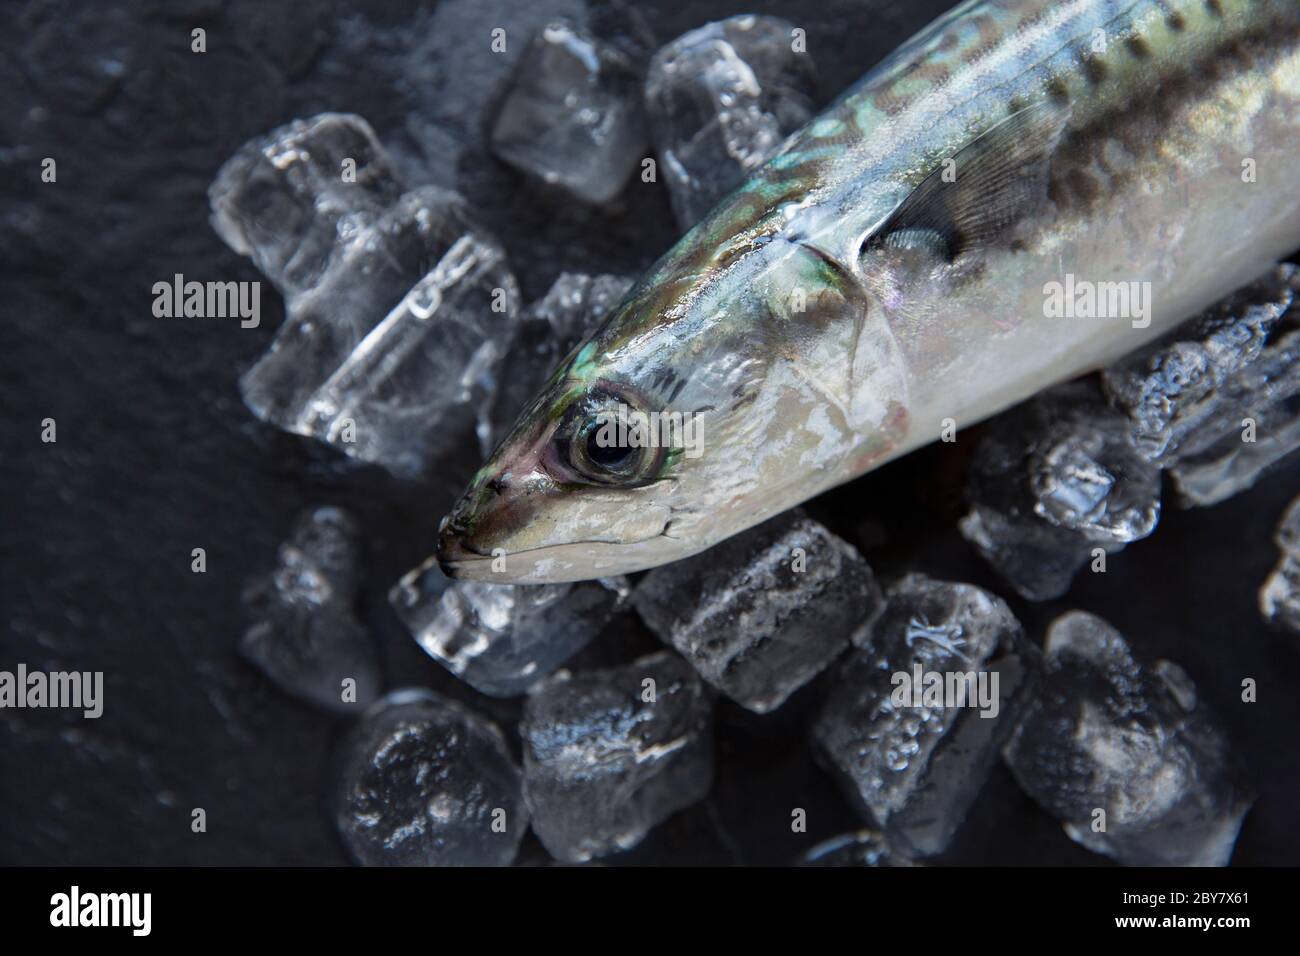 Eine rohe, ungekochte Makrele, Scomber scombrus, die vom Chesil Beach in Dorset mit Rute und Linie gefangen wurde. Präsentiert auf Eis und einem dunklen Schieferrücken Stockfoto